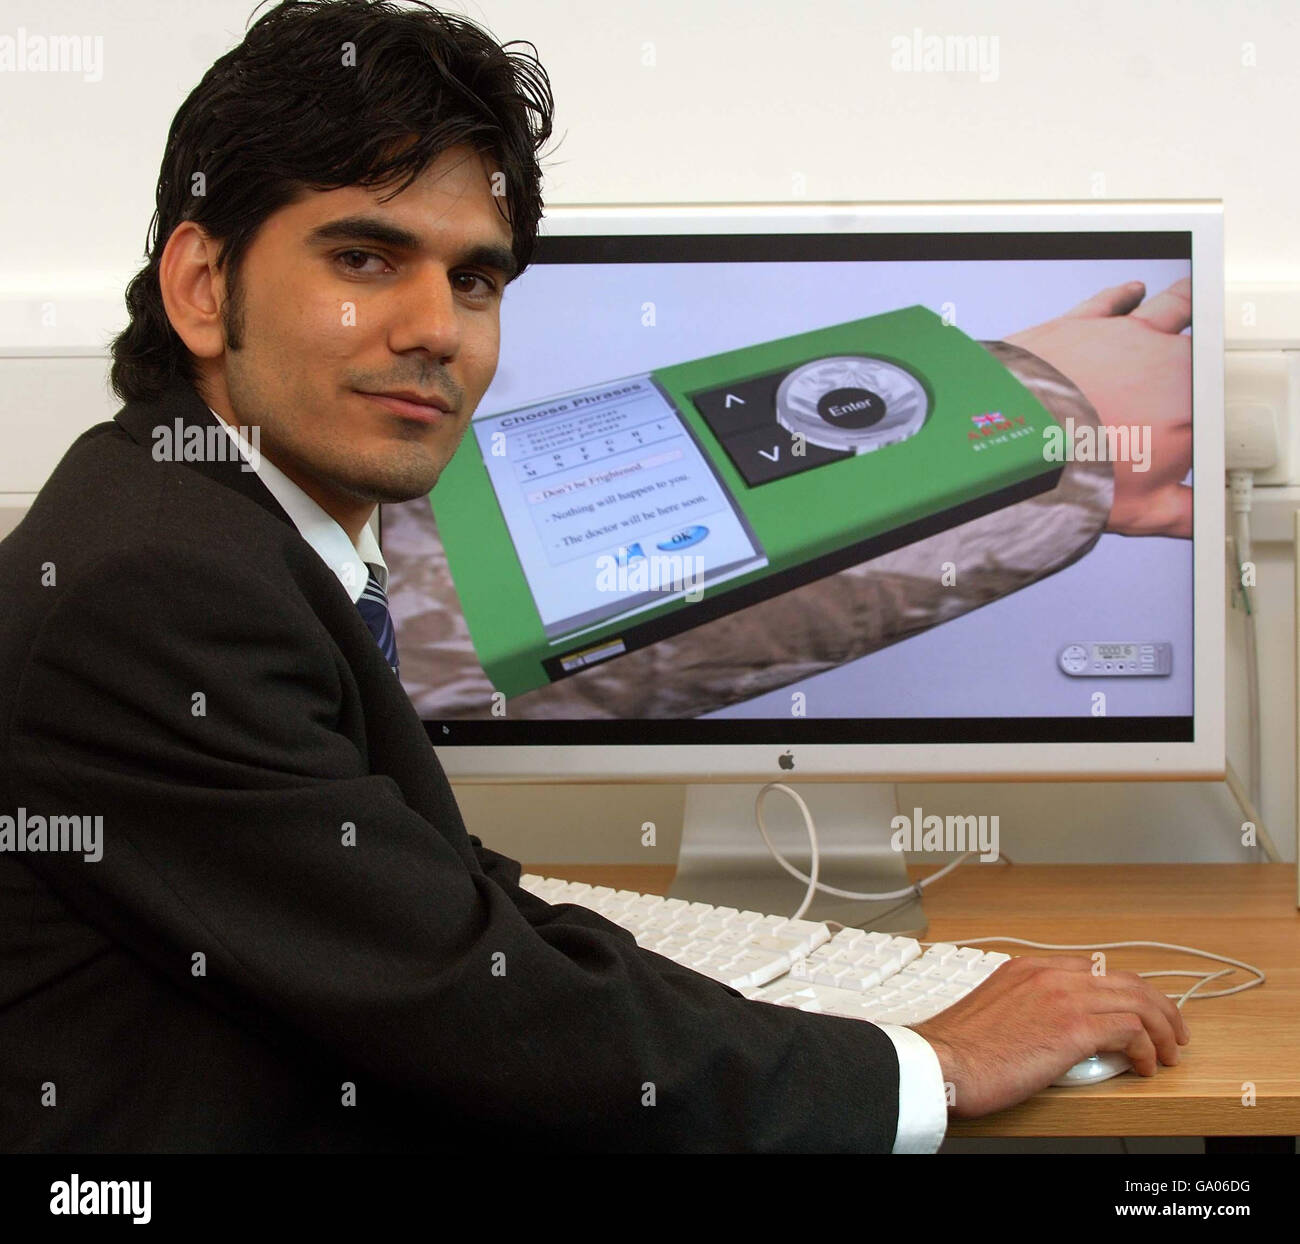 El estudiante iraquí Amin Ismail en la Universidad de Derby, donde reveló  su proyecto final, un dispositivo de traducción usado como un reloj de  pulsera que espera podría ayudar a los soldados